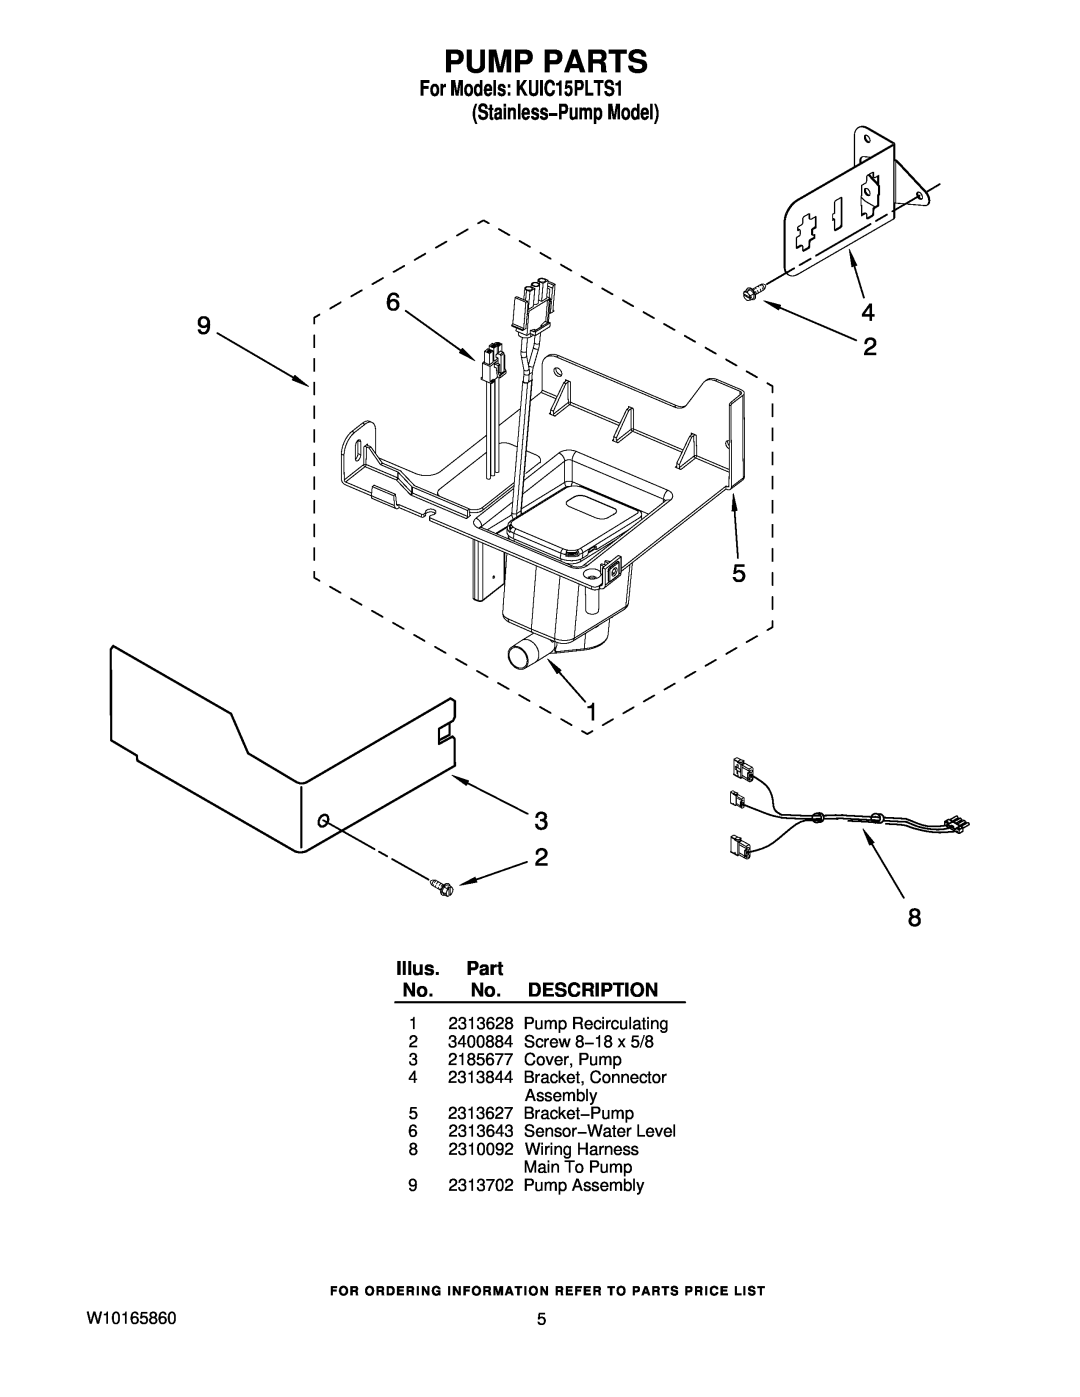 KitchenAid manual Pump Parts, Illus. Part No. No. DESCRIPTION, For Models KUIC15PLTS1 Stainless−Pump Model 